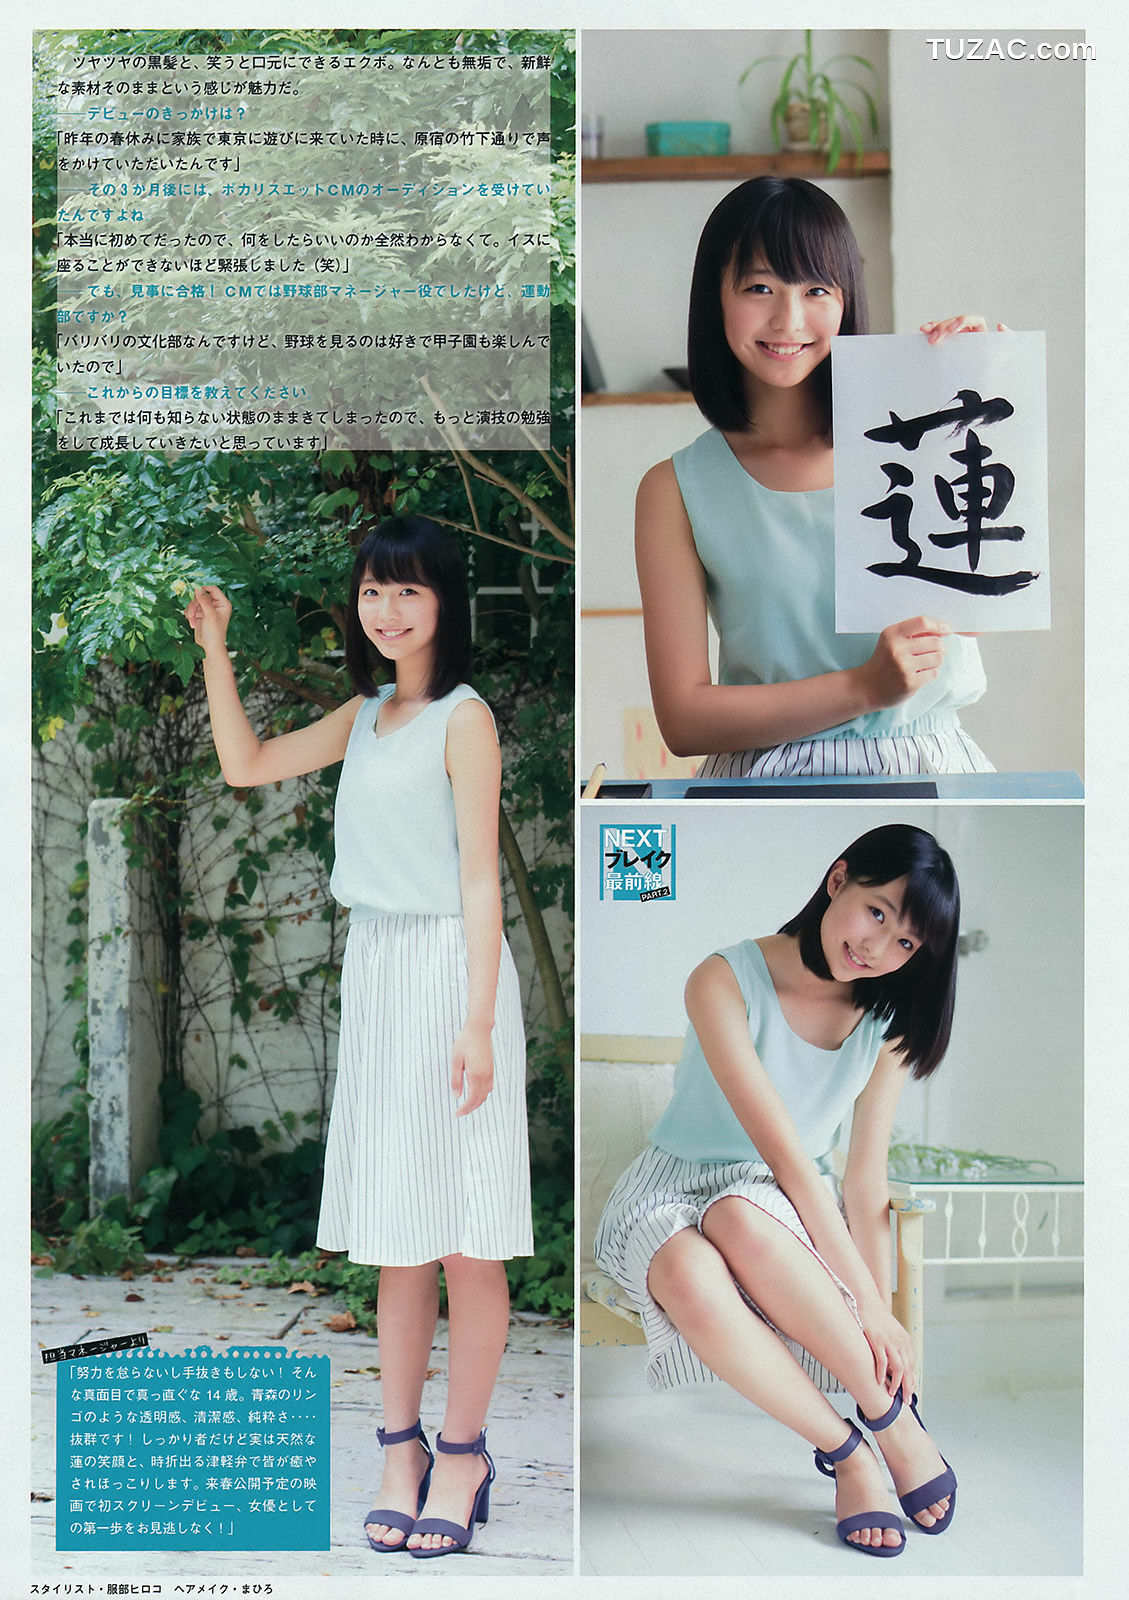 Young Magazine杂志写真_ 浅川梨奈 2015年No.45 写真杂志[14P]